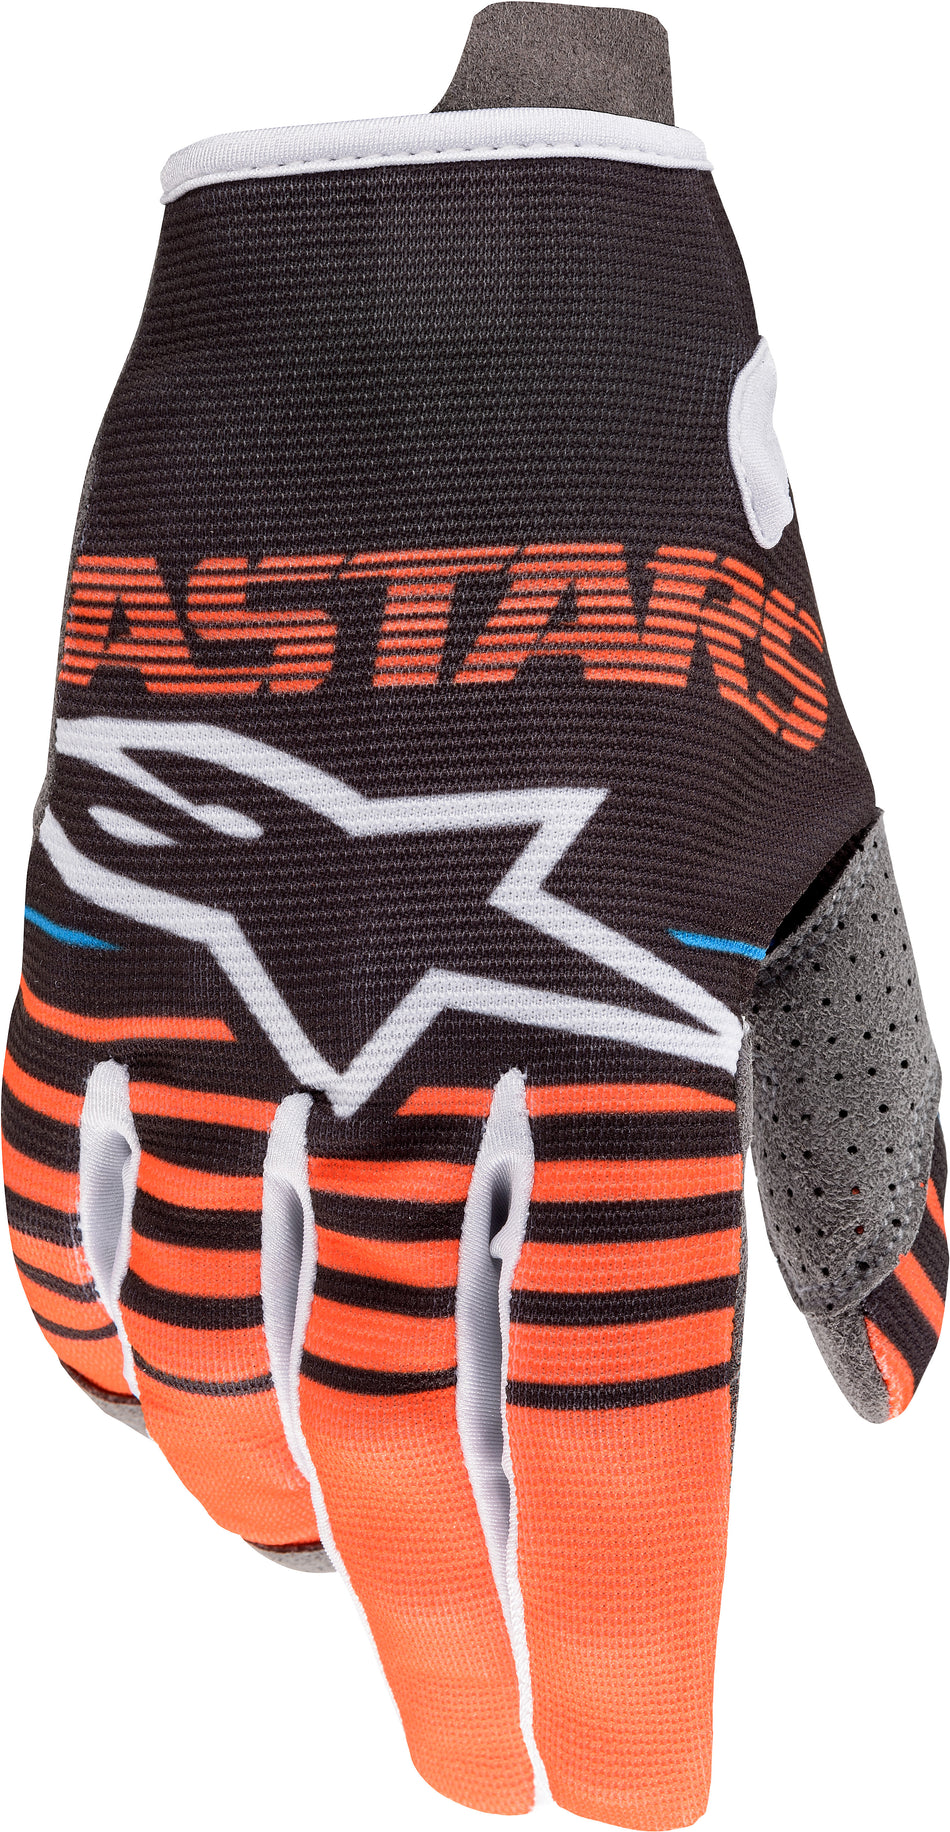 ALPINESTARS Youth Radar Gloves Anthracite/Orange Md 3541820-1444-M